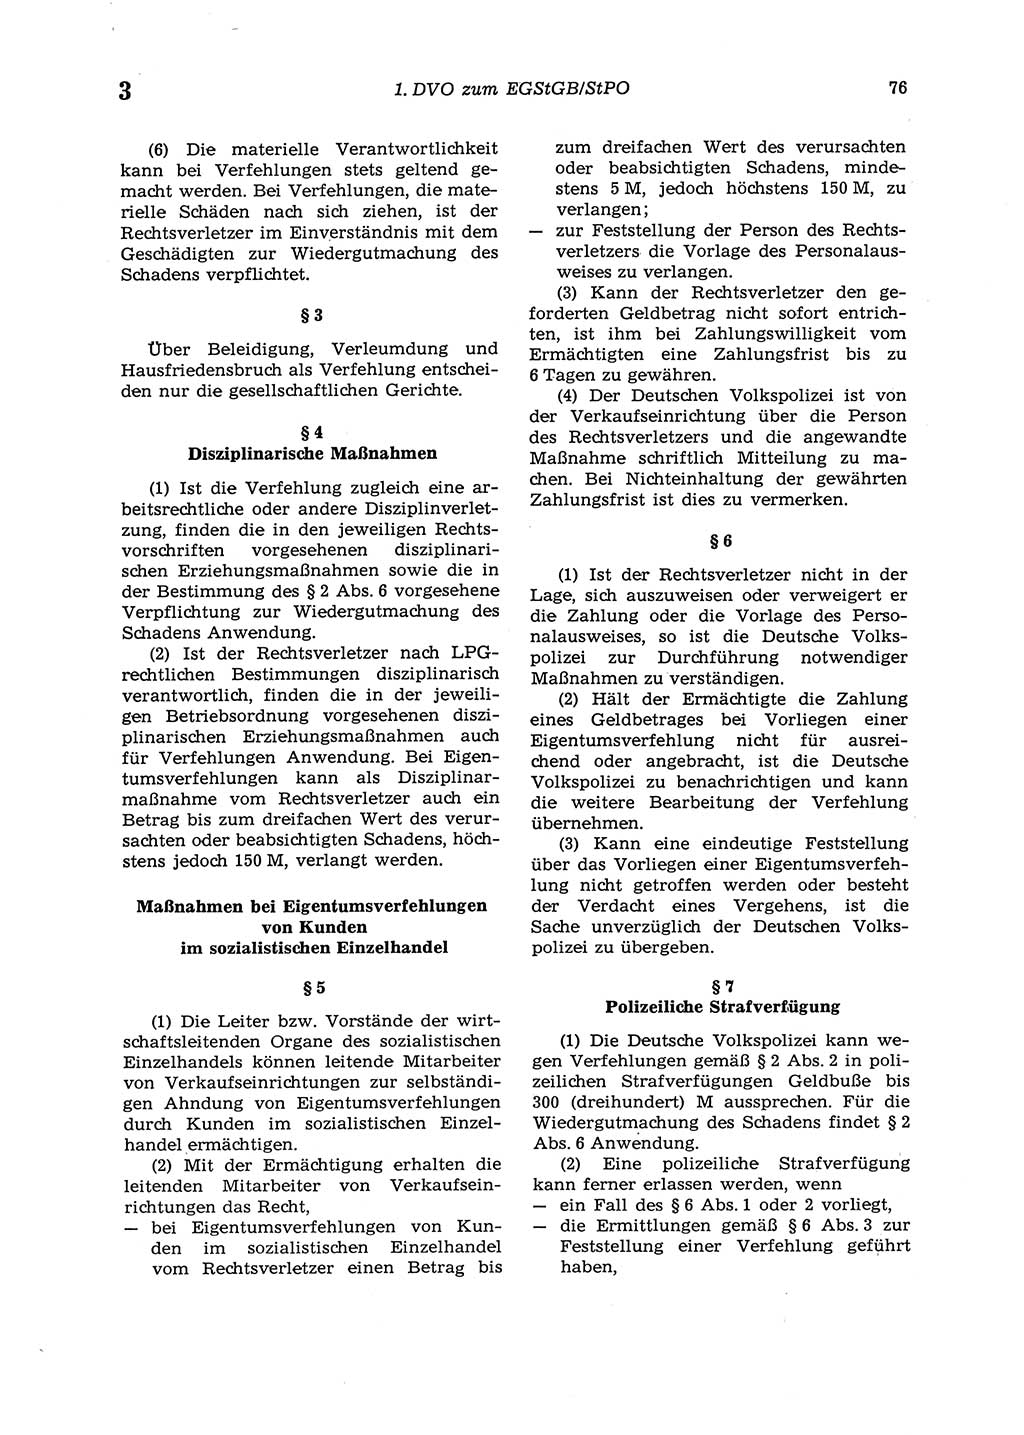 Strafgesetzbuch (StGB) der Deutschen Demokratischen Republik (DDR) 1987, Seite 76 (StGB DDR 1987, S. 76)